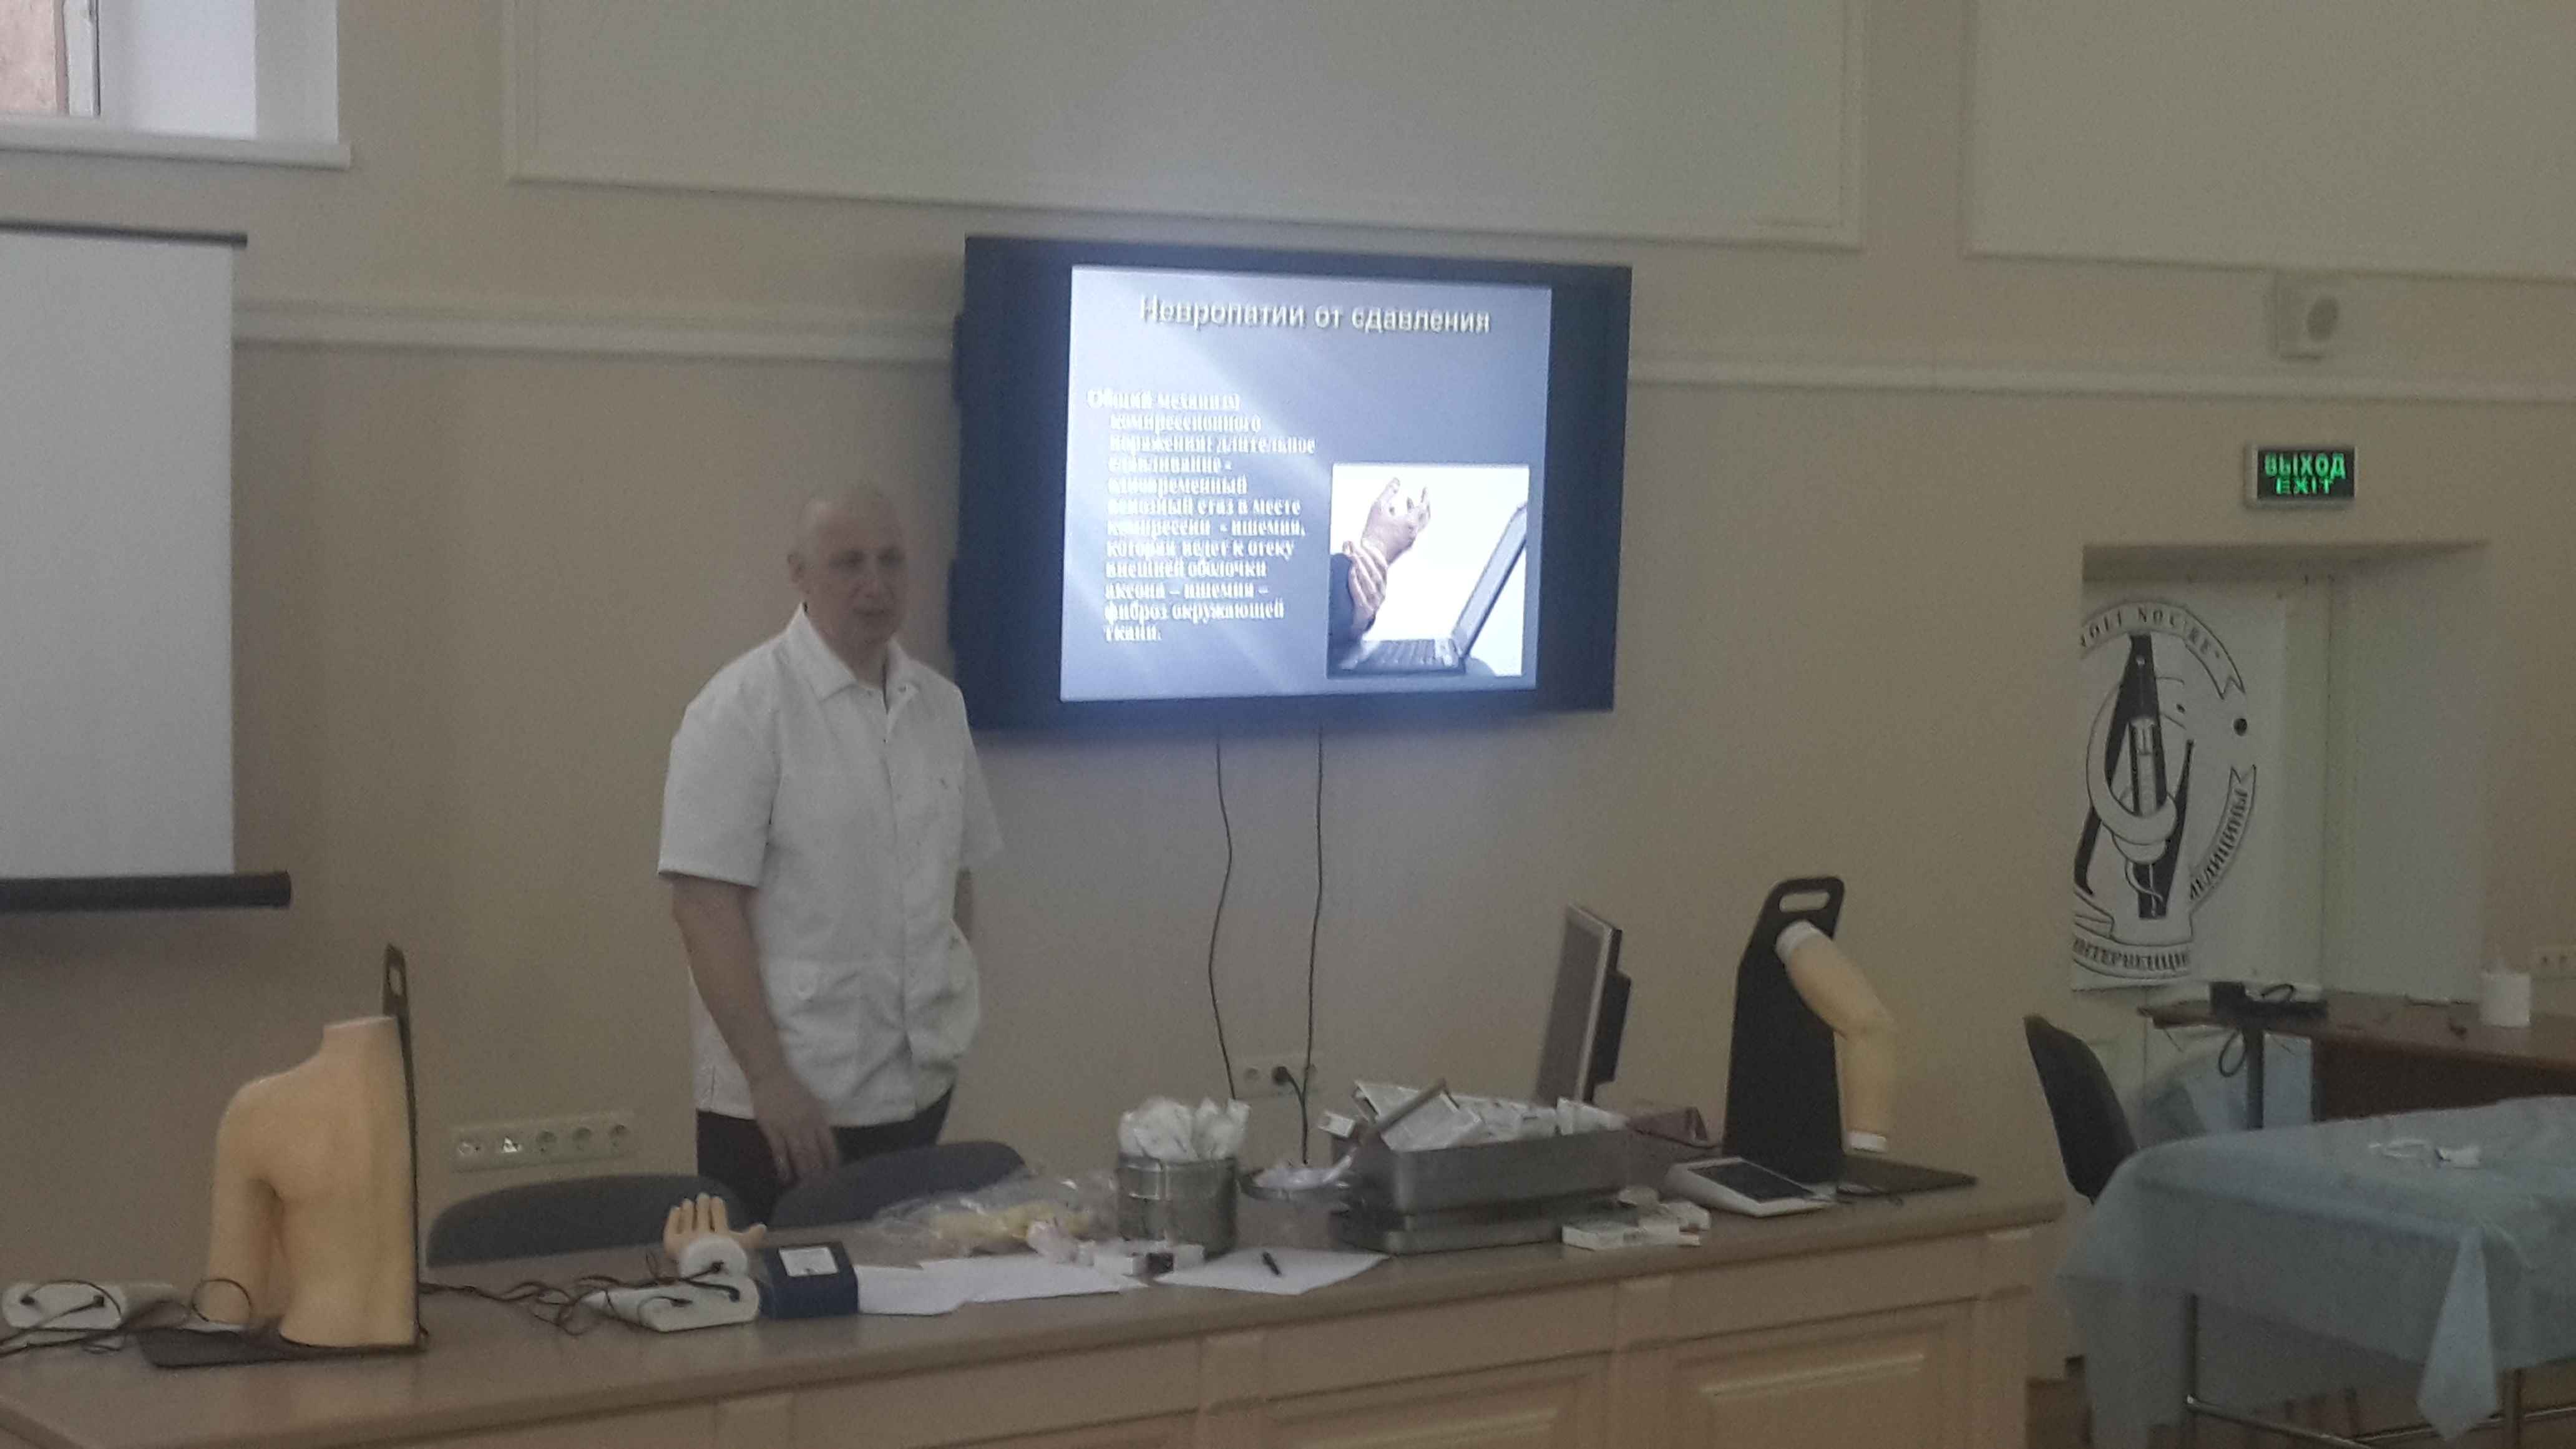 Г.Ю.Евзиков читает лекцию о хирургическом лечении тоннельных синдромов